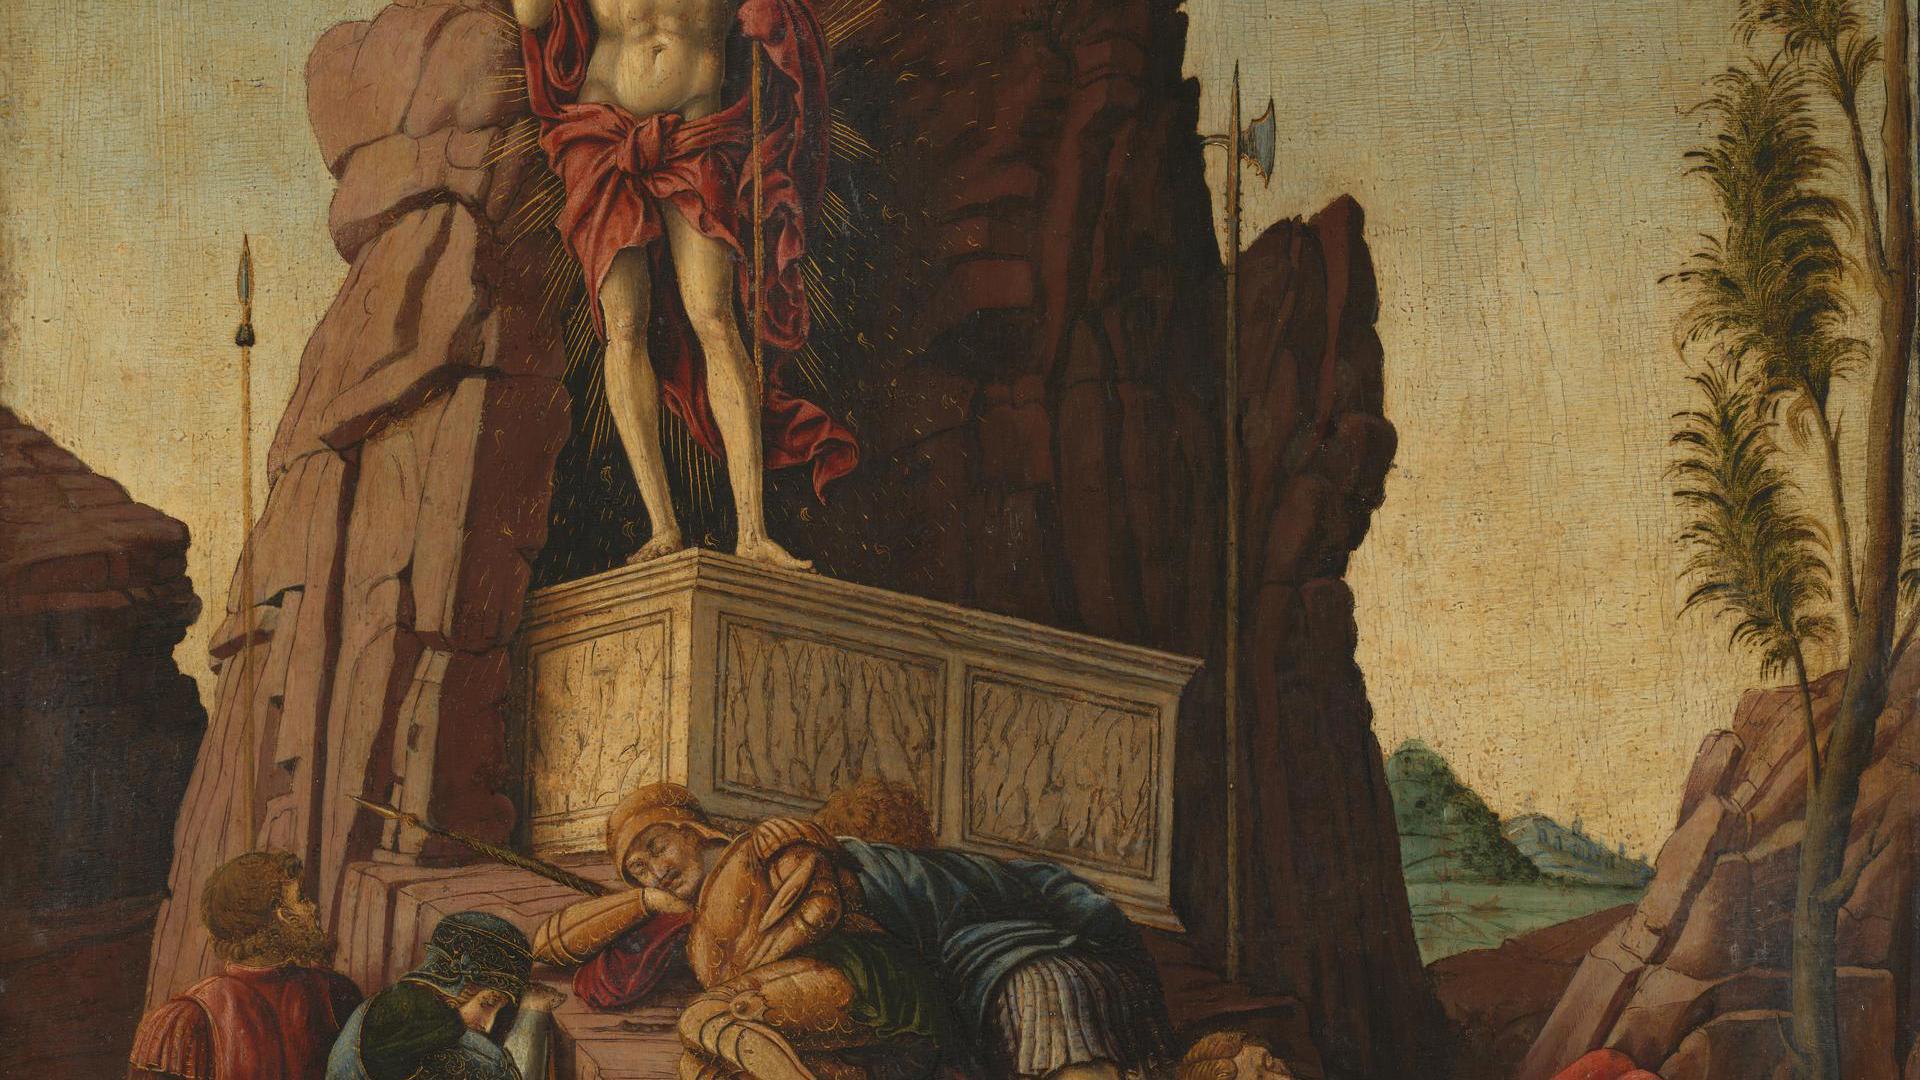 The Resurrection by Imitator of Andrea Mantegna